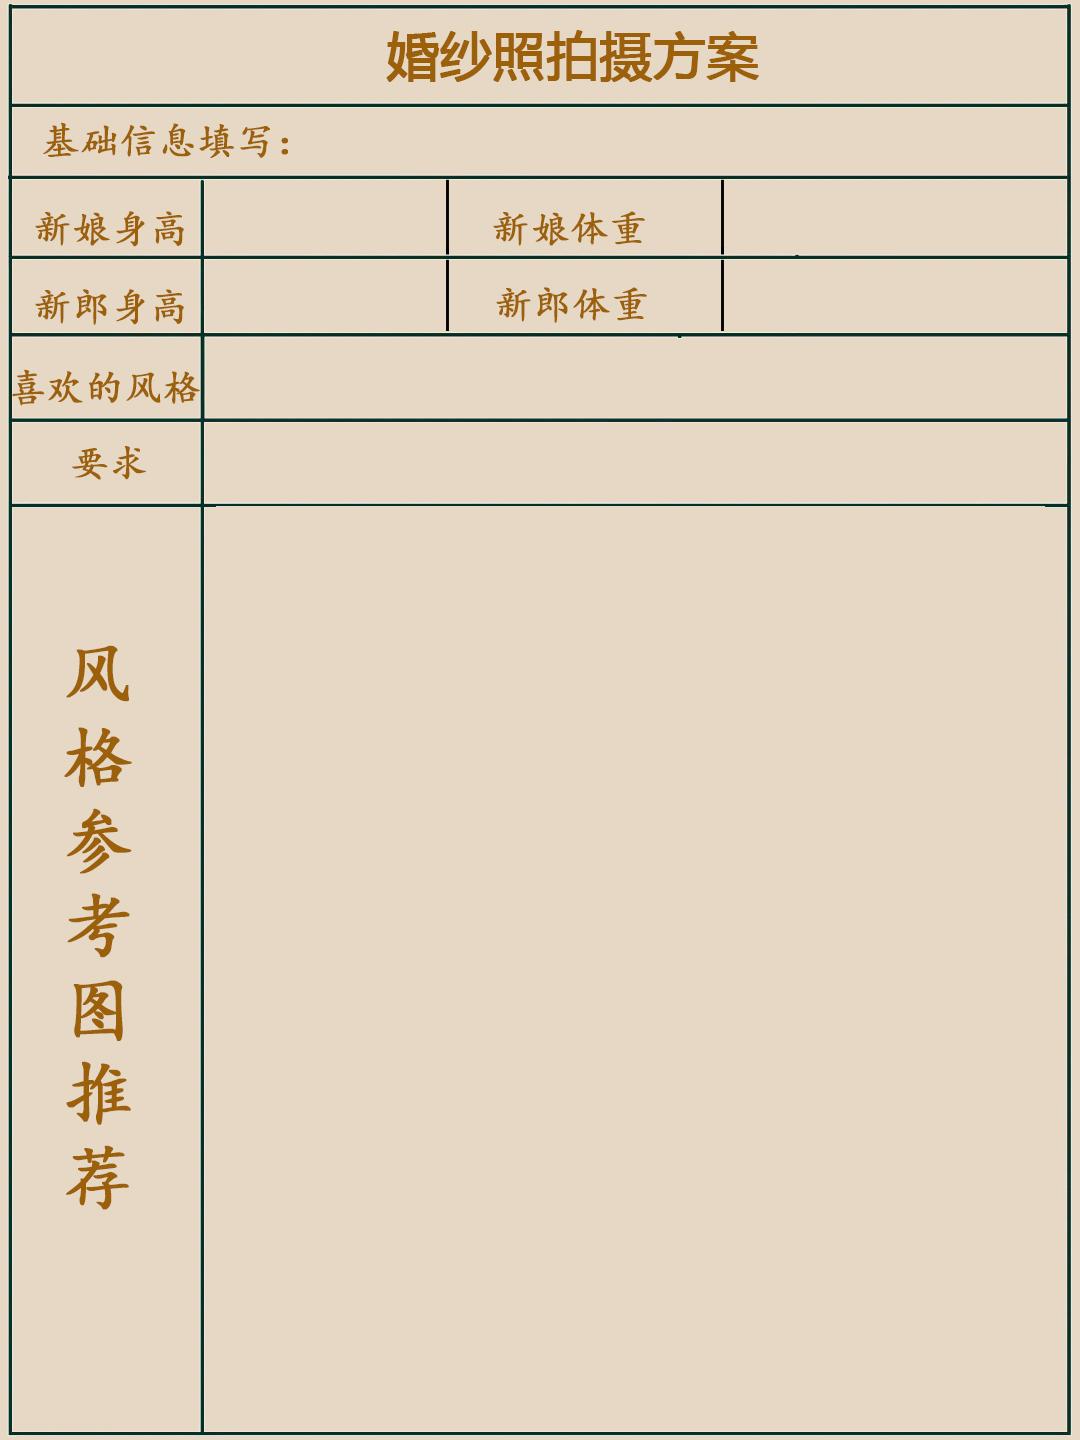 婚纱登记表_体温登记表图片(2)